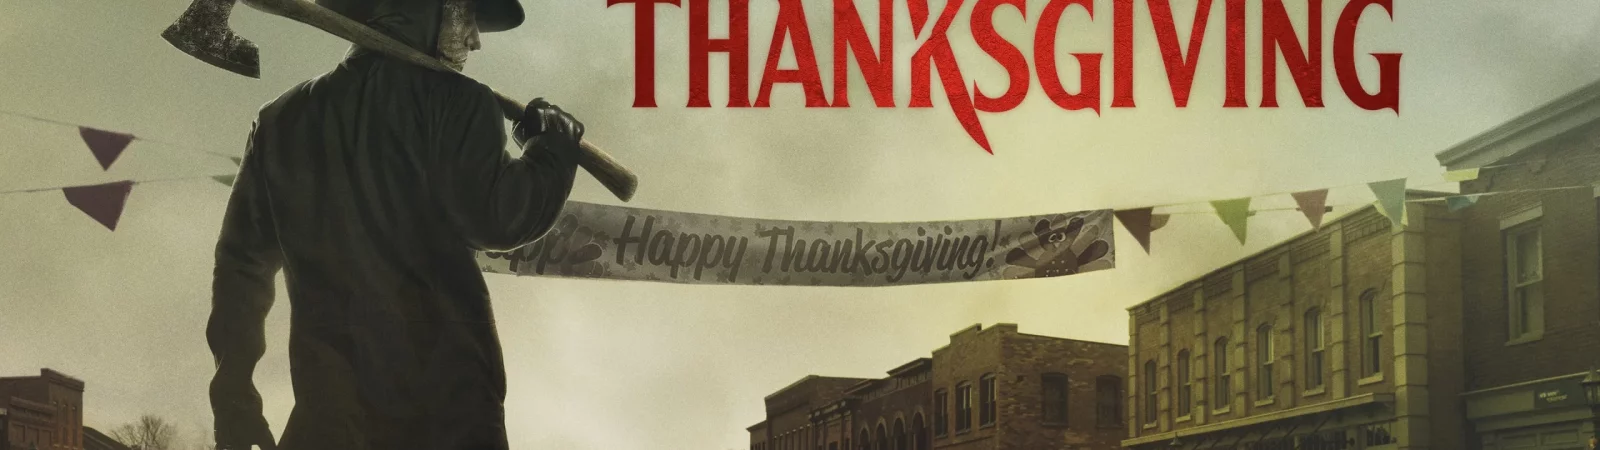 Photo du film : Thanksgiving : la semaine de l'horreur